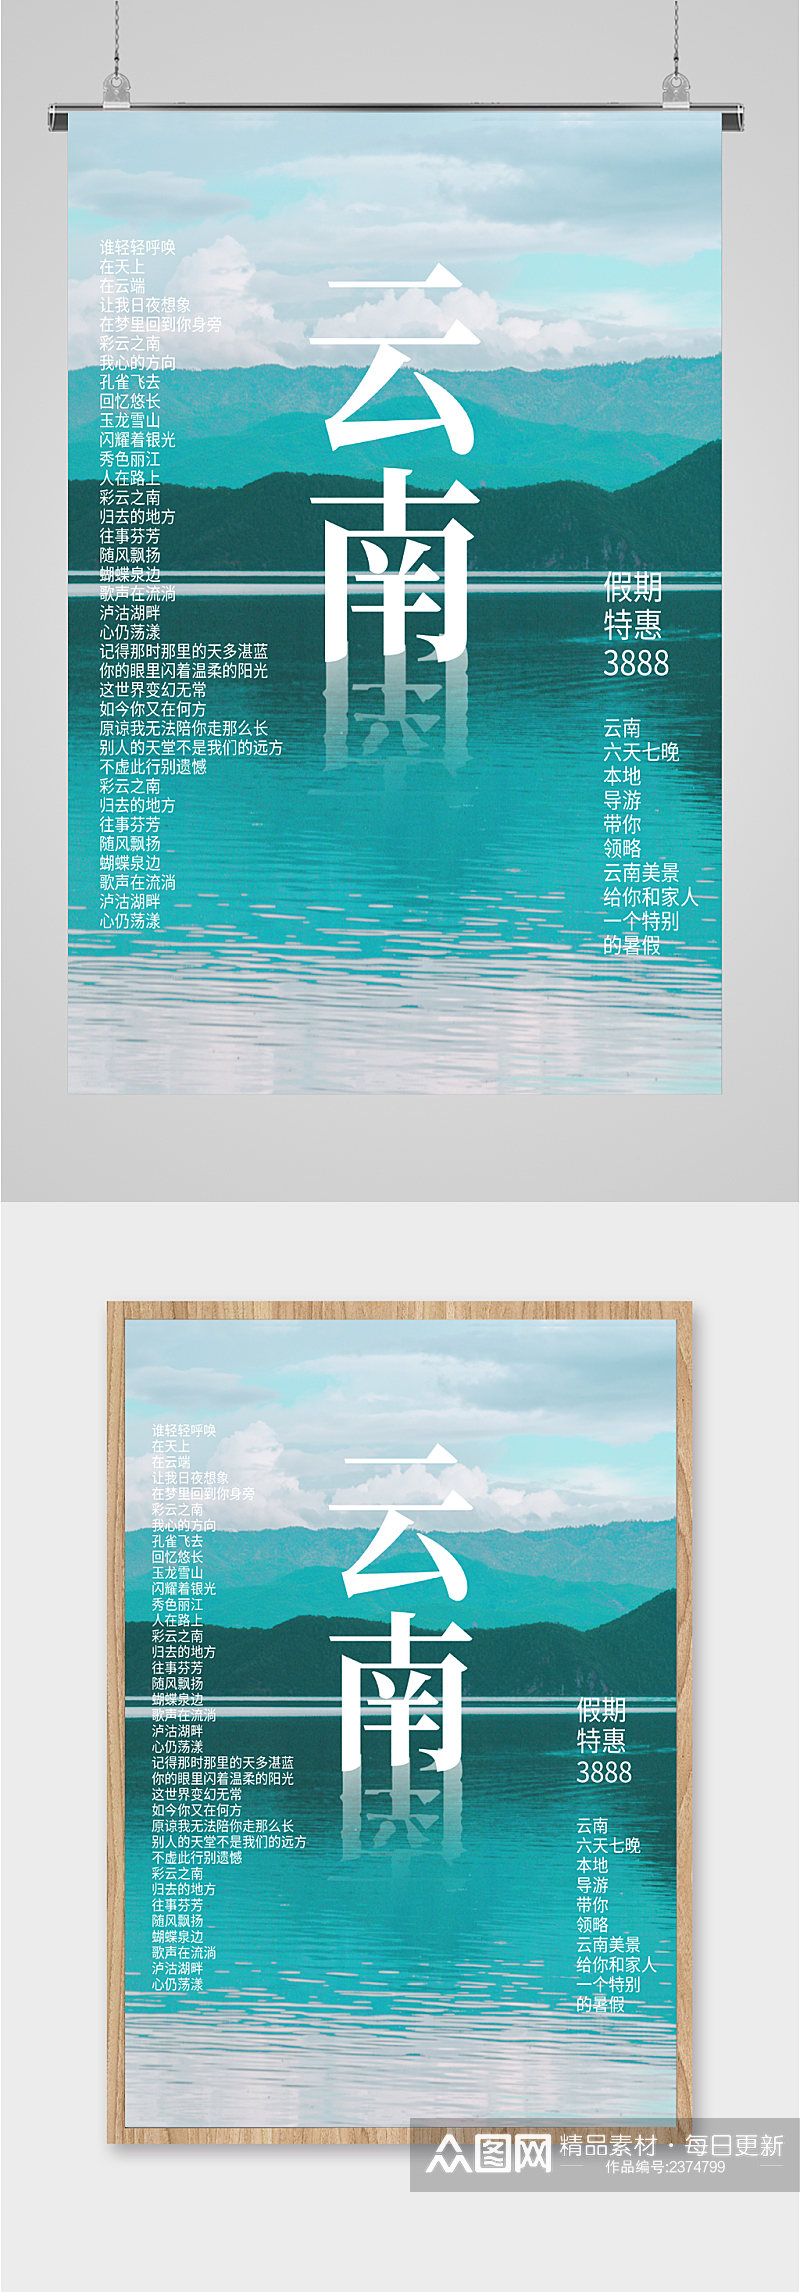 云南旅游假期特惠海滩海报素材